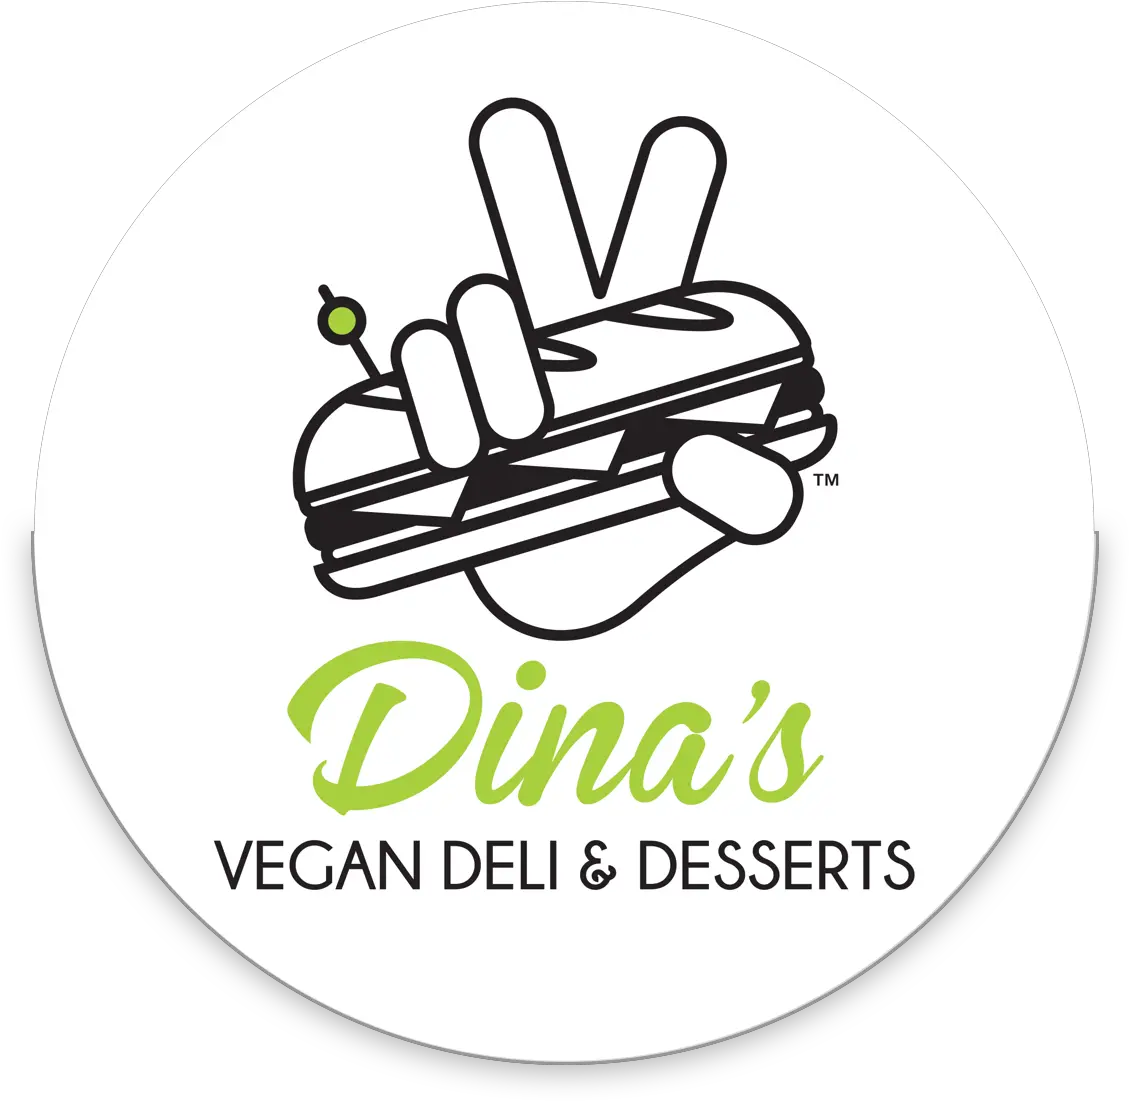 Dinau0027s Vegan Deli Home V Sign Png Vegan Logo Png